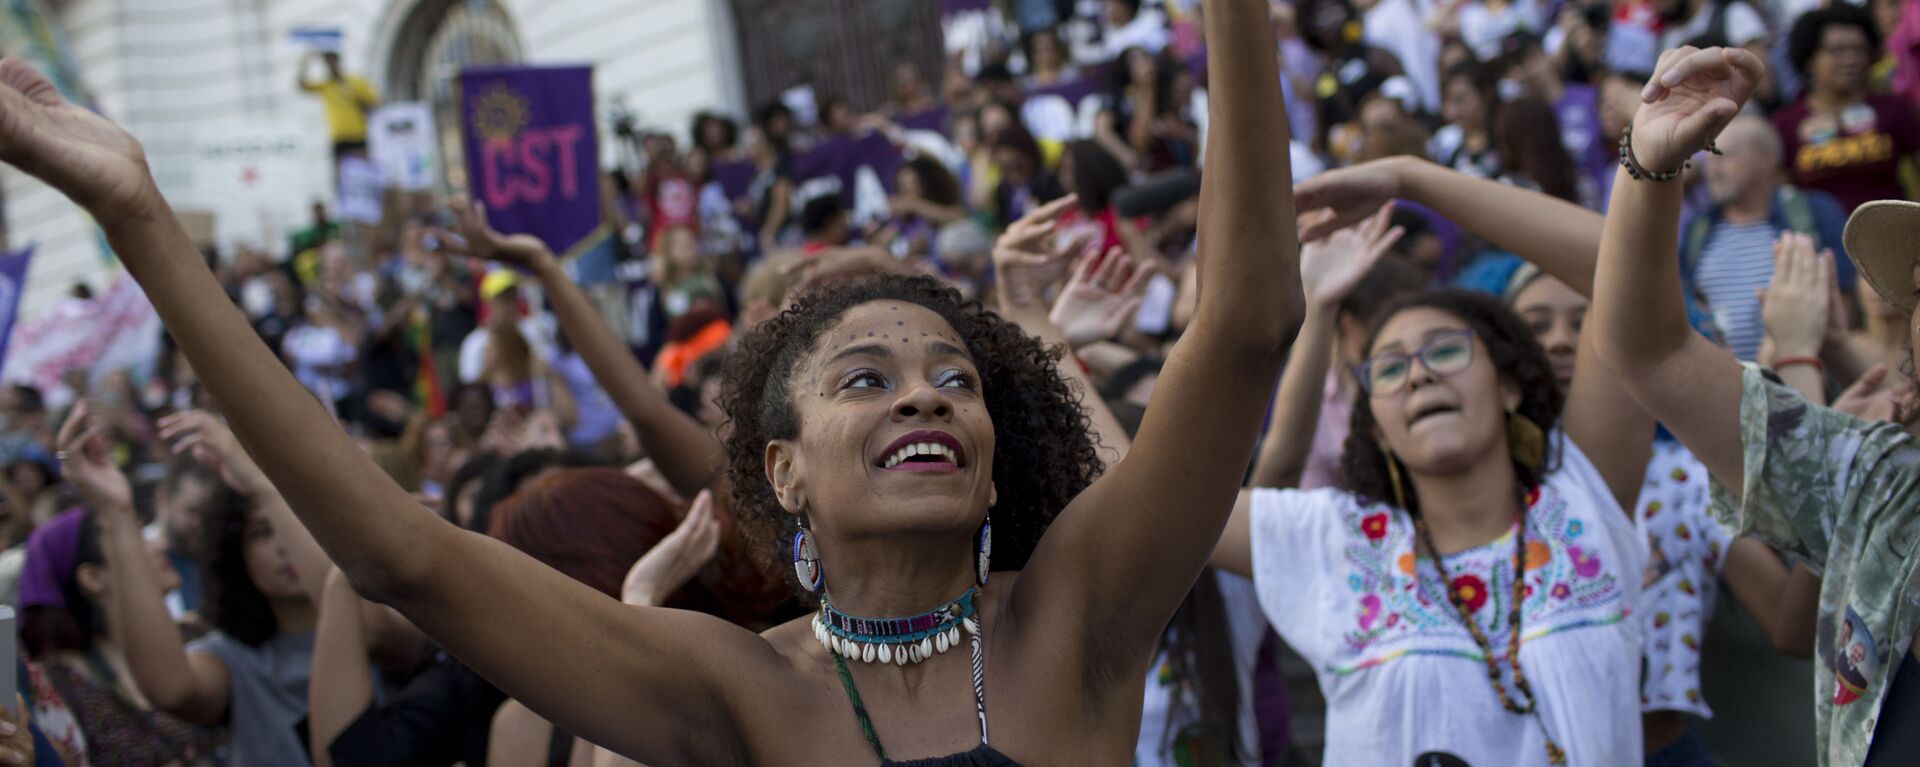 Mulheres dançando durante manifestações no Rio de apoio ao presidenciável do PT, Fernando Haddad - Sputnik Brasil, 1920, 10.12.2018